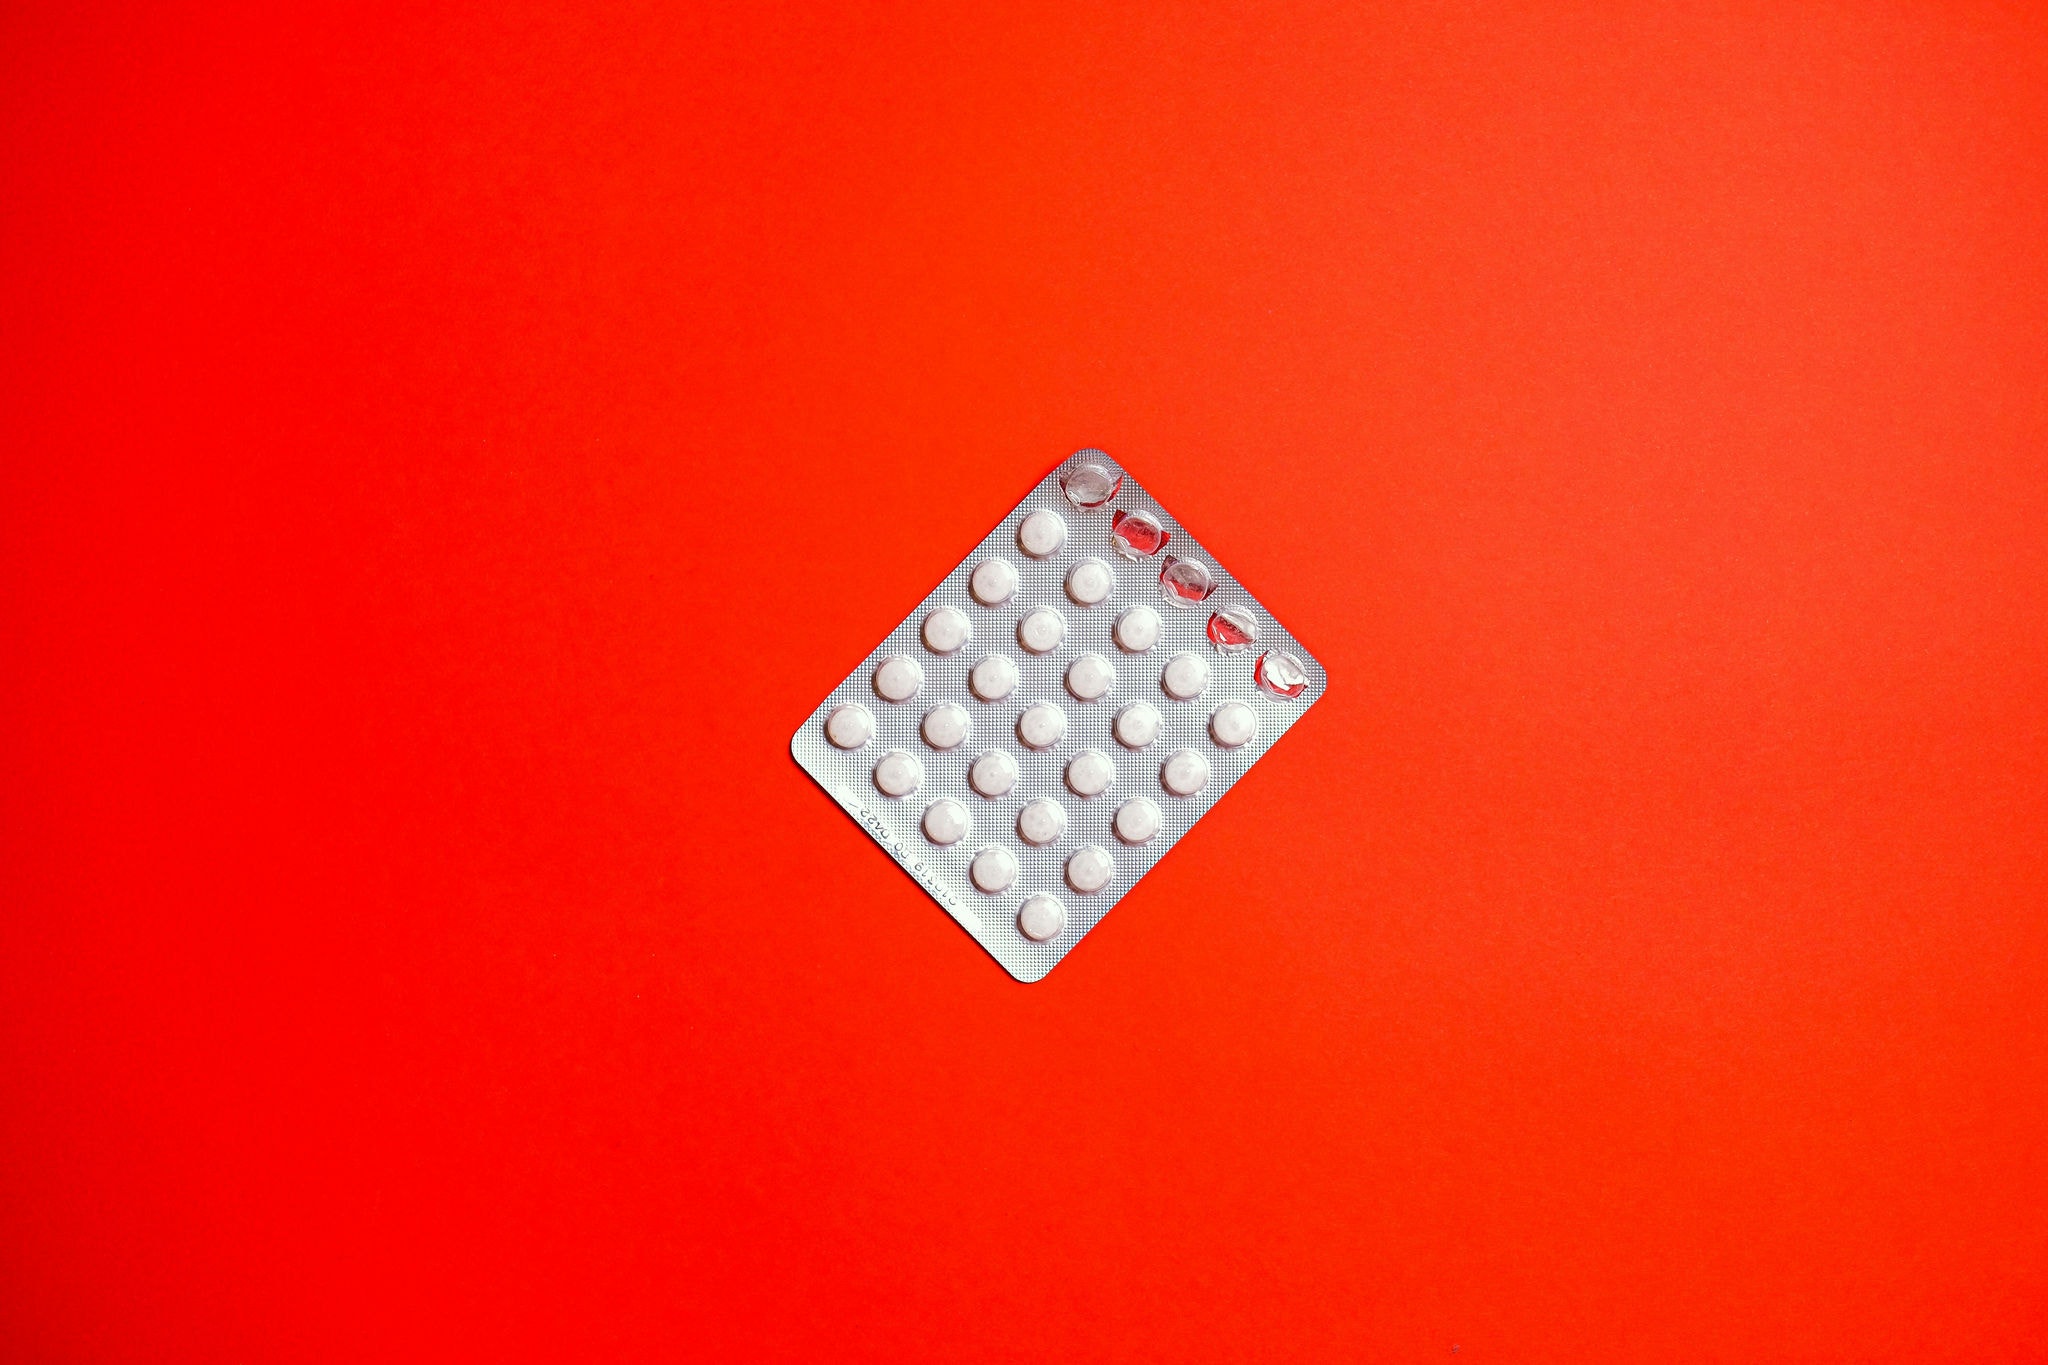 Imagem ilustrativa de cartela de pílula anticoncepcional